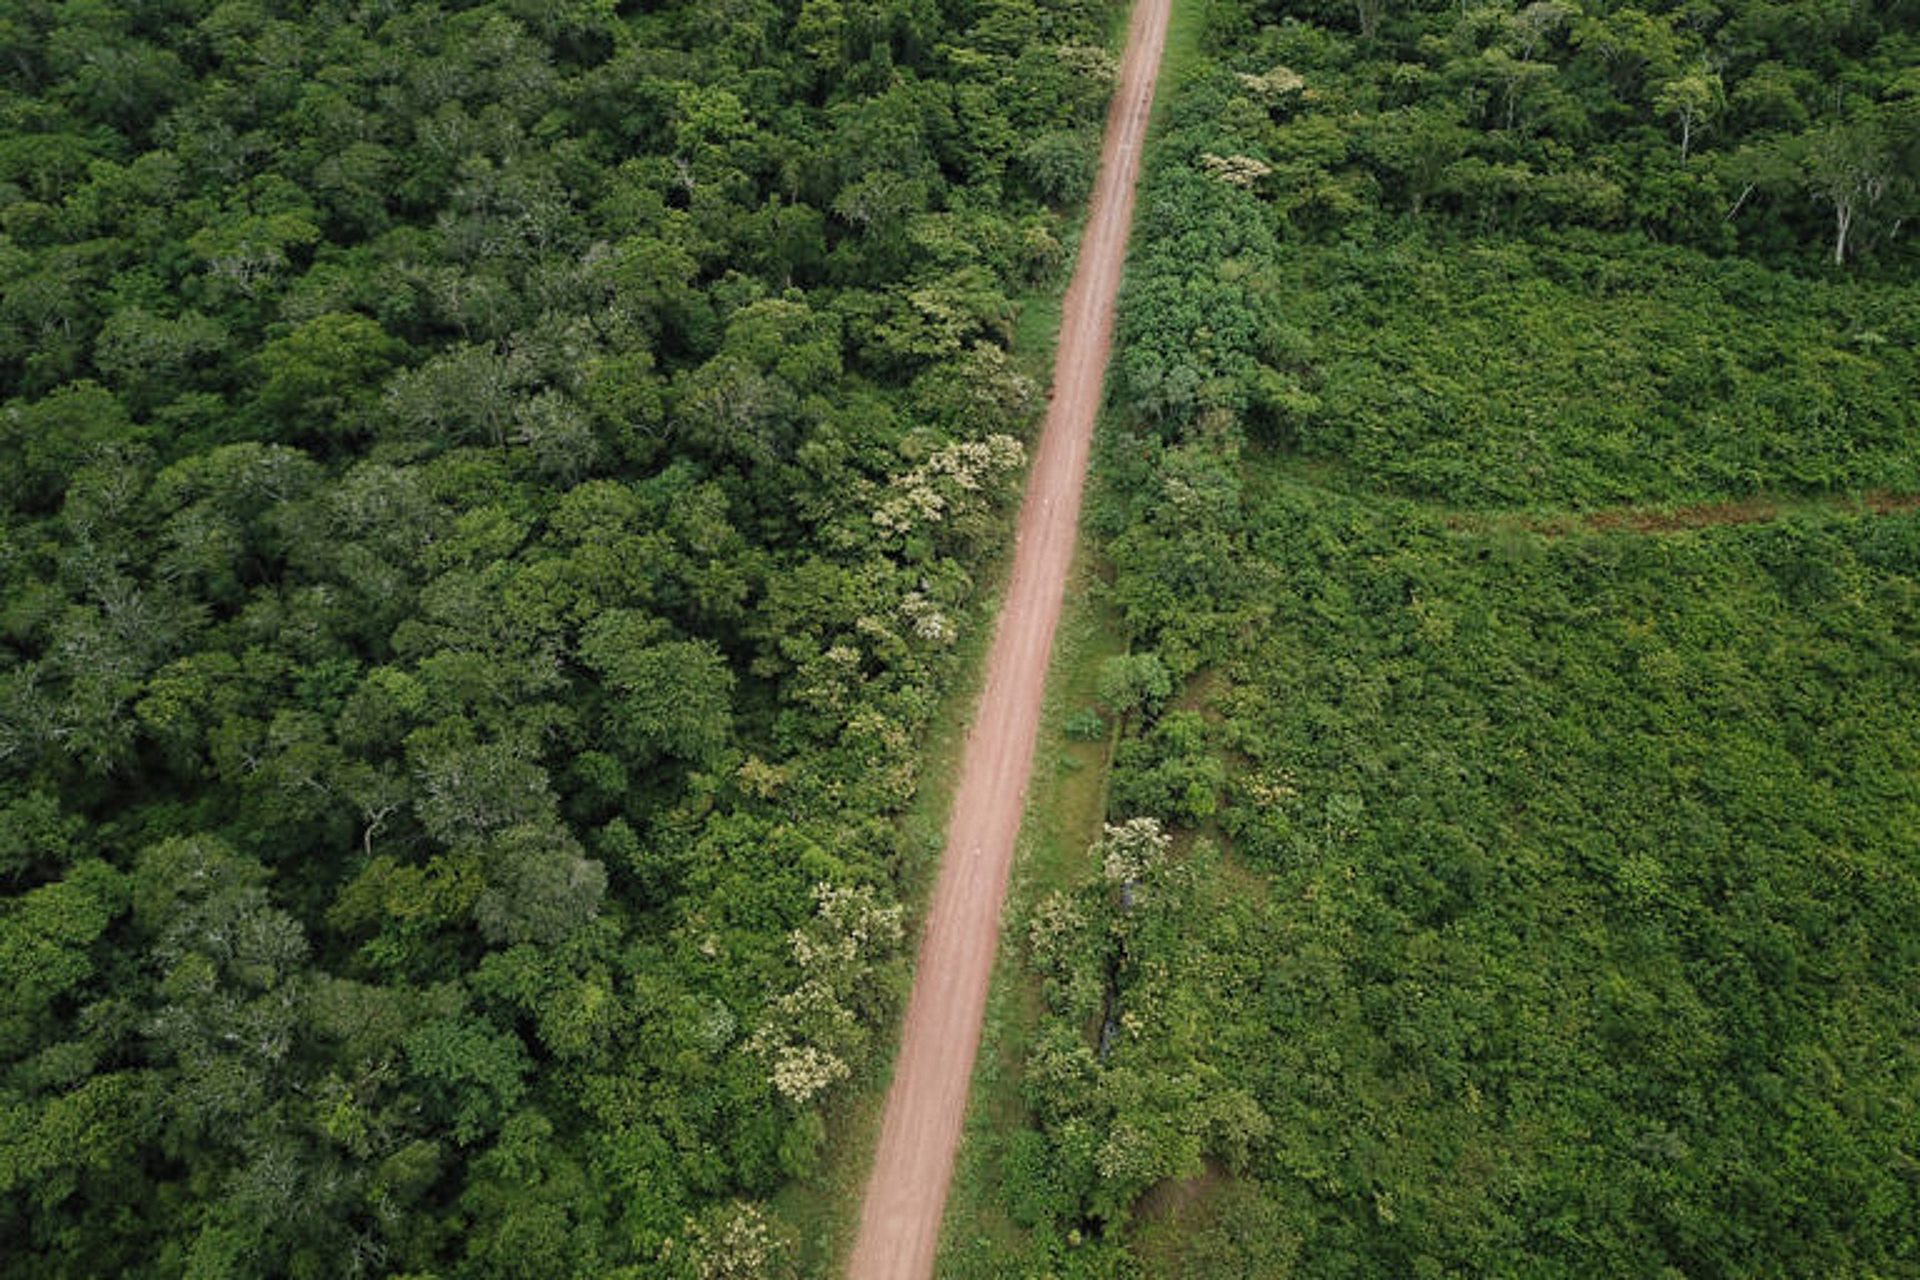 Projetos de estradas na Amazônia podem desmatar 2,4 milhões de hectares nos próximos 20 anos